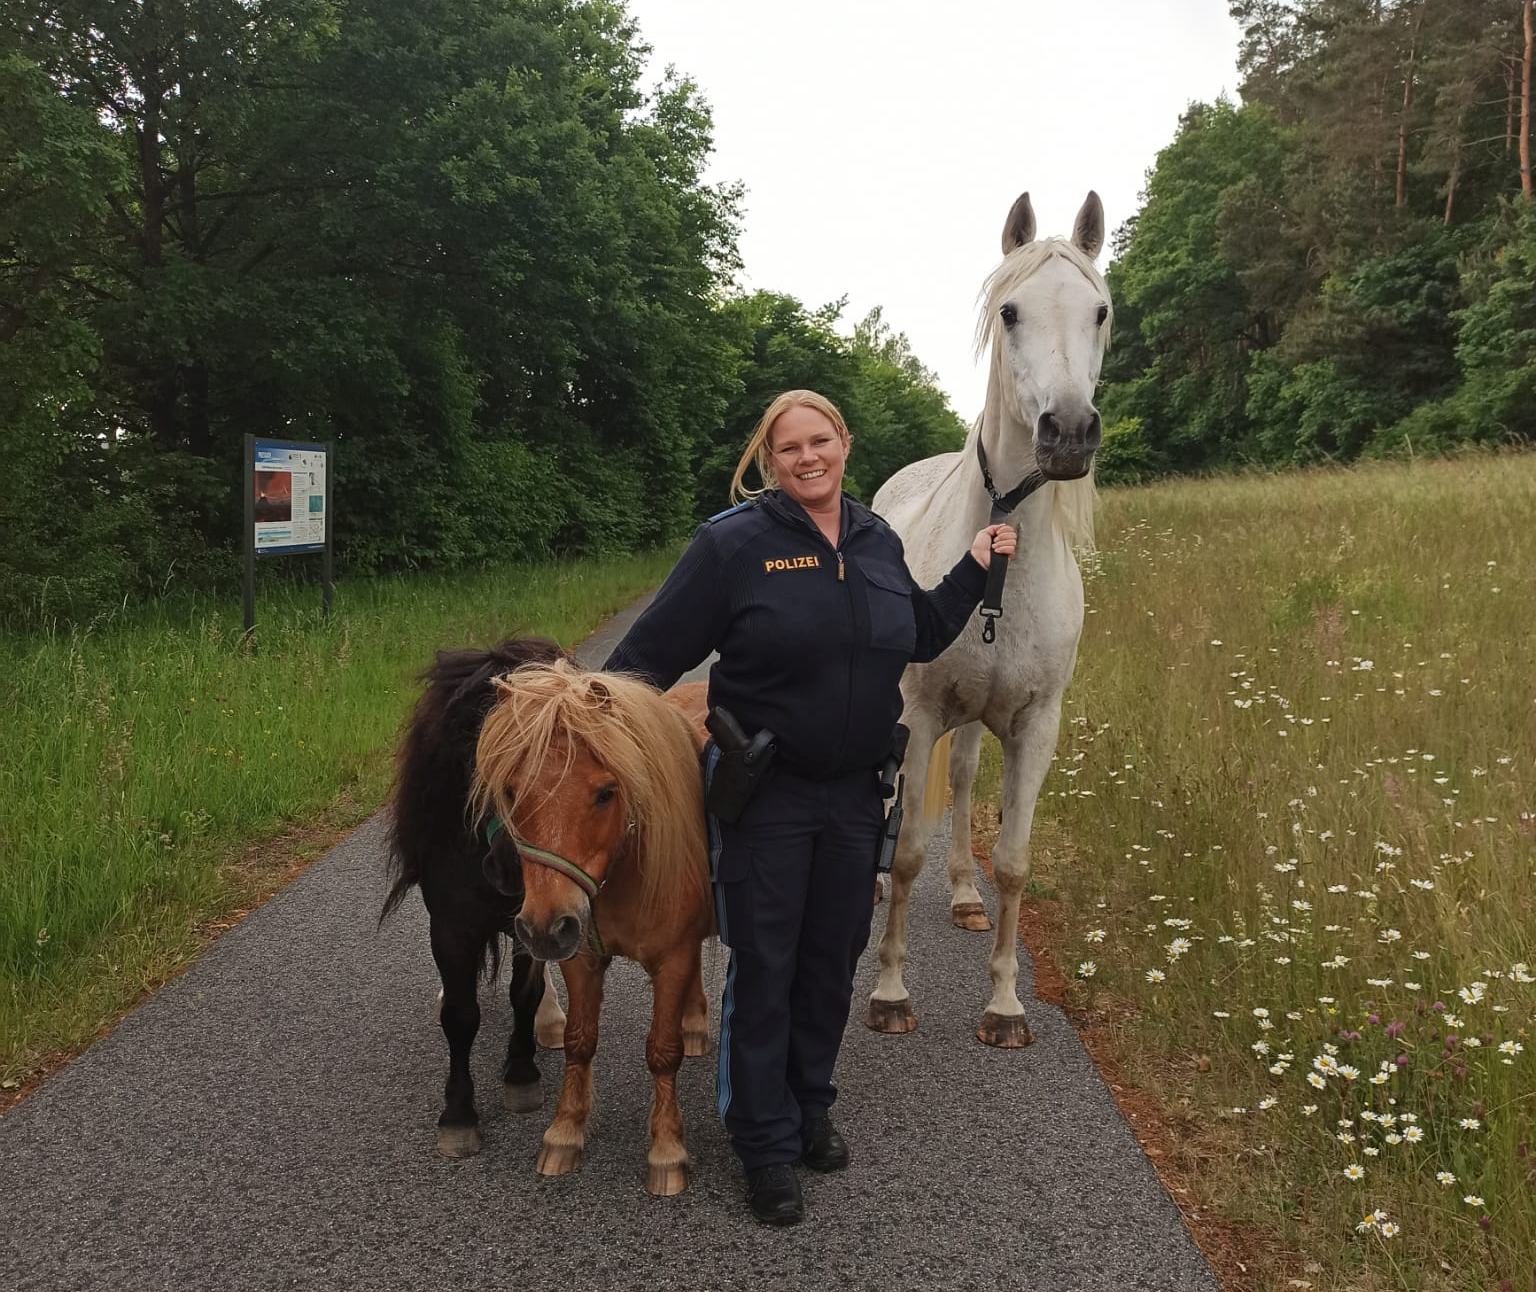 Dank der Beamtin konnten die drei Pferde wieder eingefangen werden Foto: Polizei Eschenbach